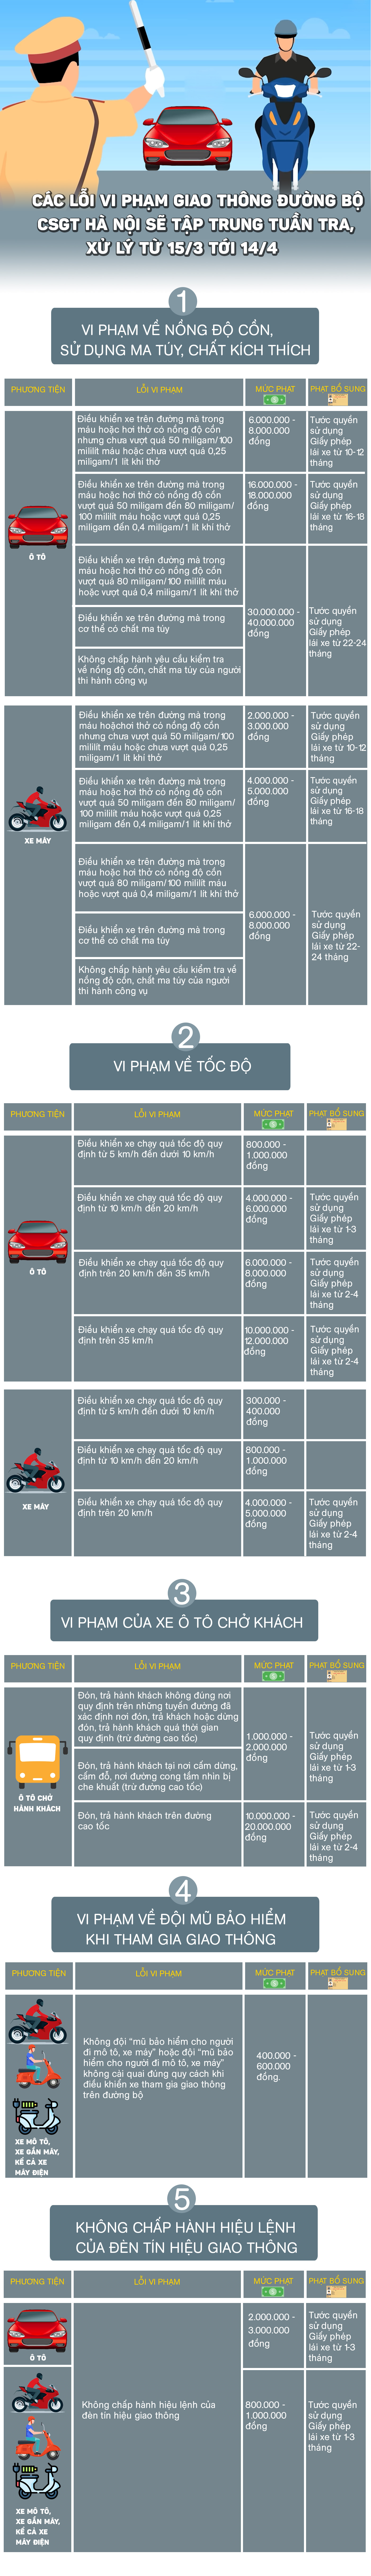 Infographic: Các lỗi vi phạm giao thông CSGT Hà Nội sẽ tuần tra, xử lý từ nay tới 14/4 và mức phạt - 1